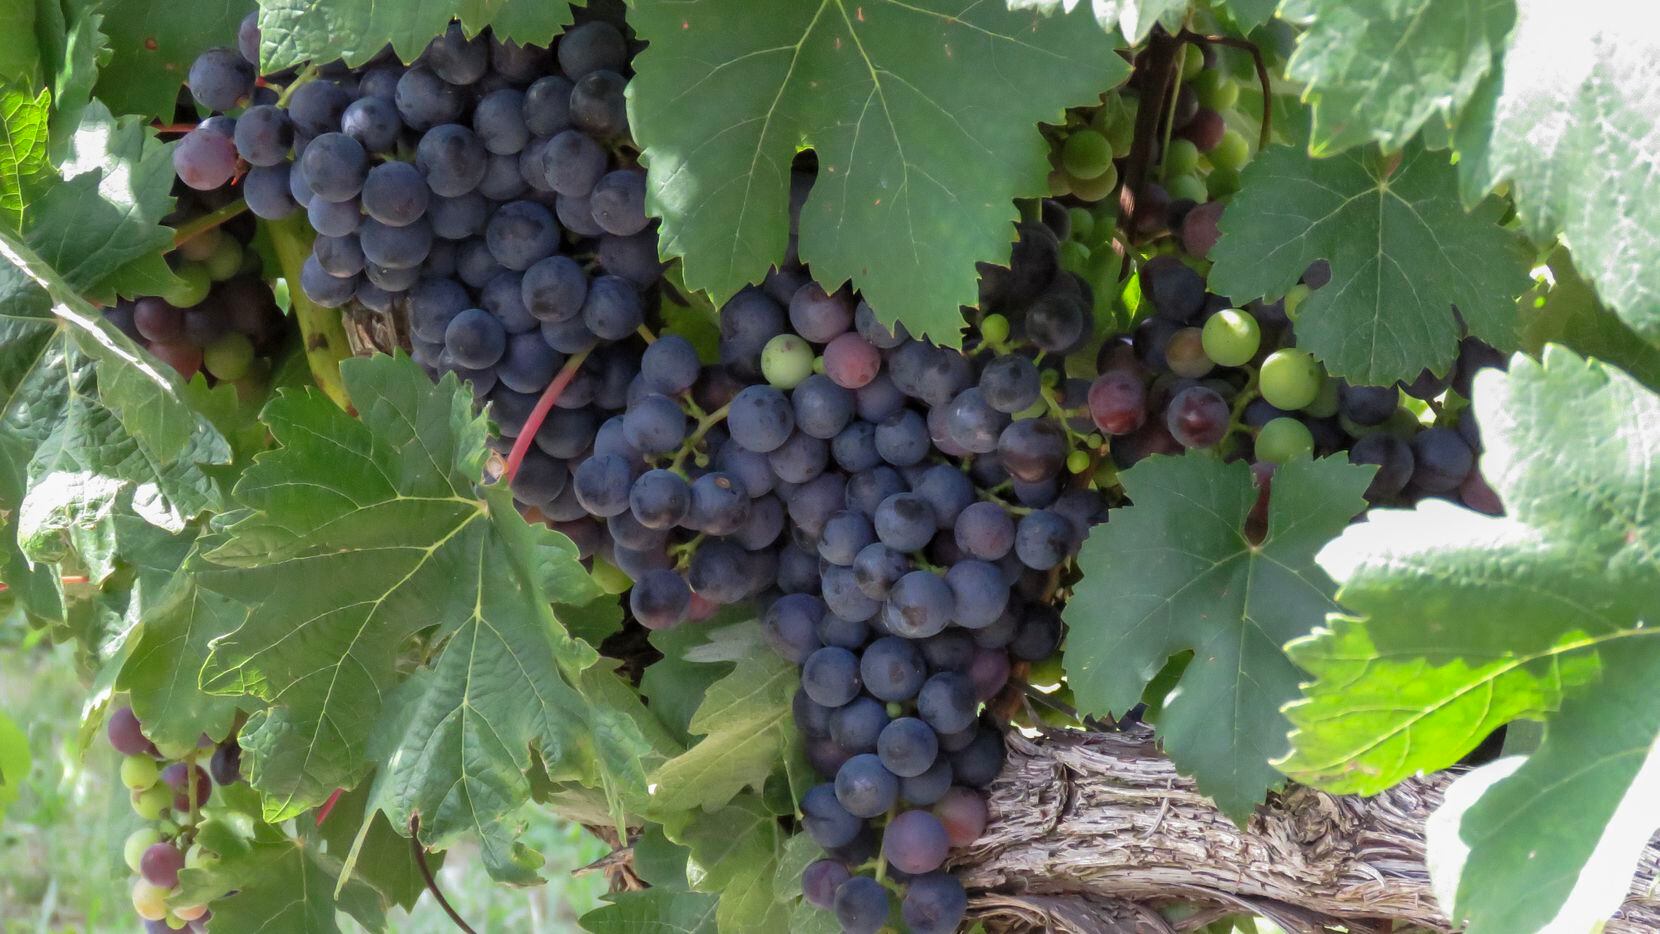 tempranillo grapes on the vine